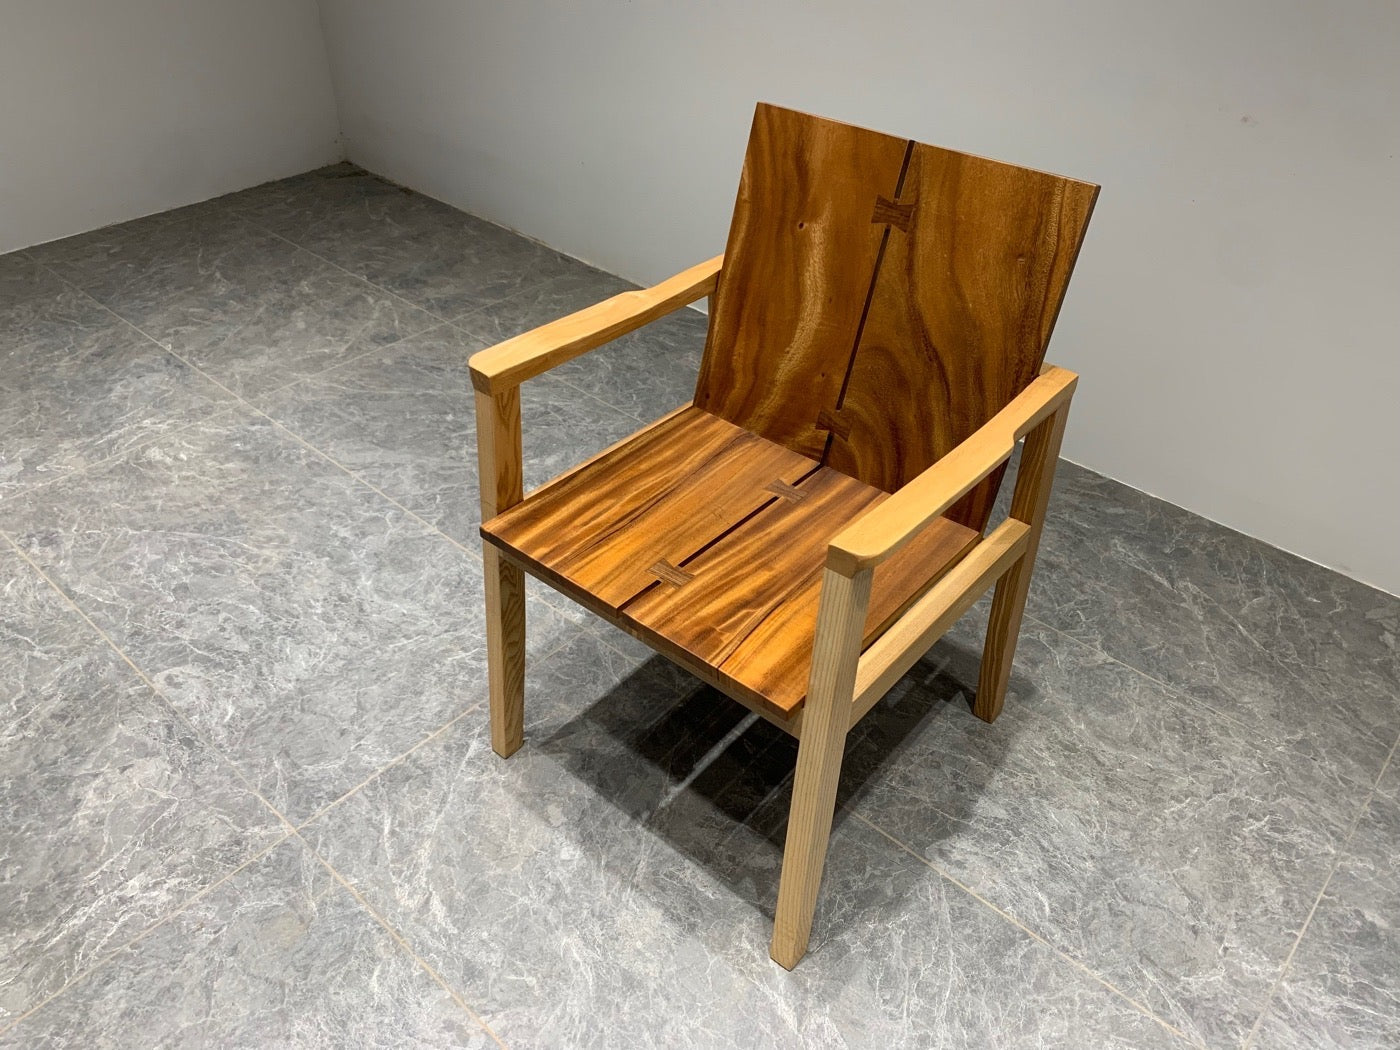 Cadeira Michigan Adirondack, cadeira de nogueira com encosto alto, cadeira traseira, cadeira de madeira